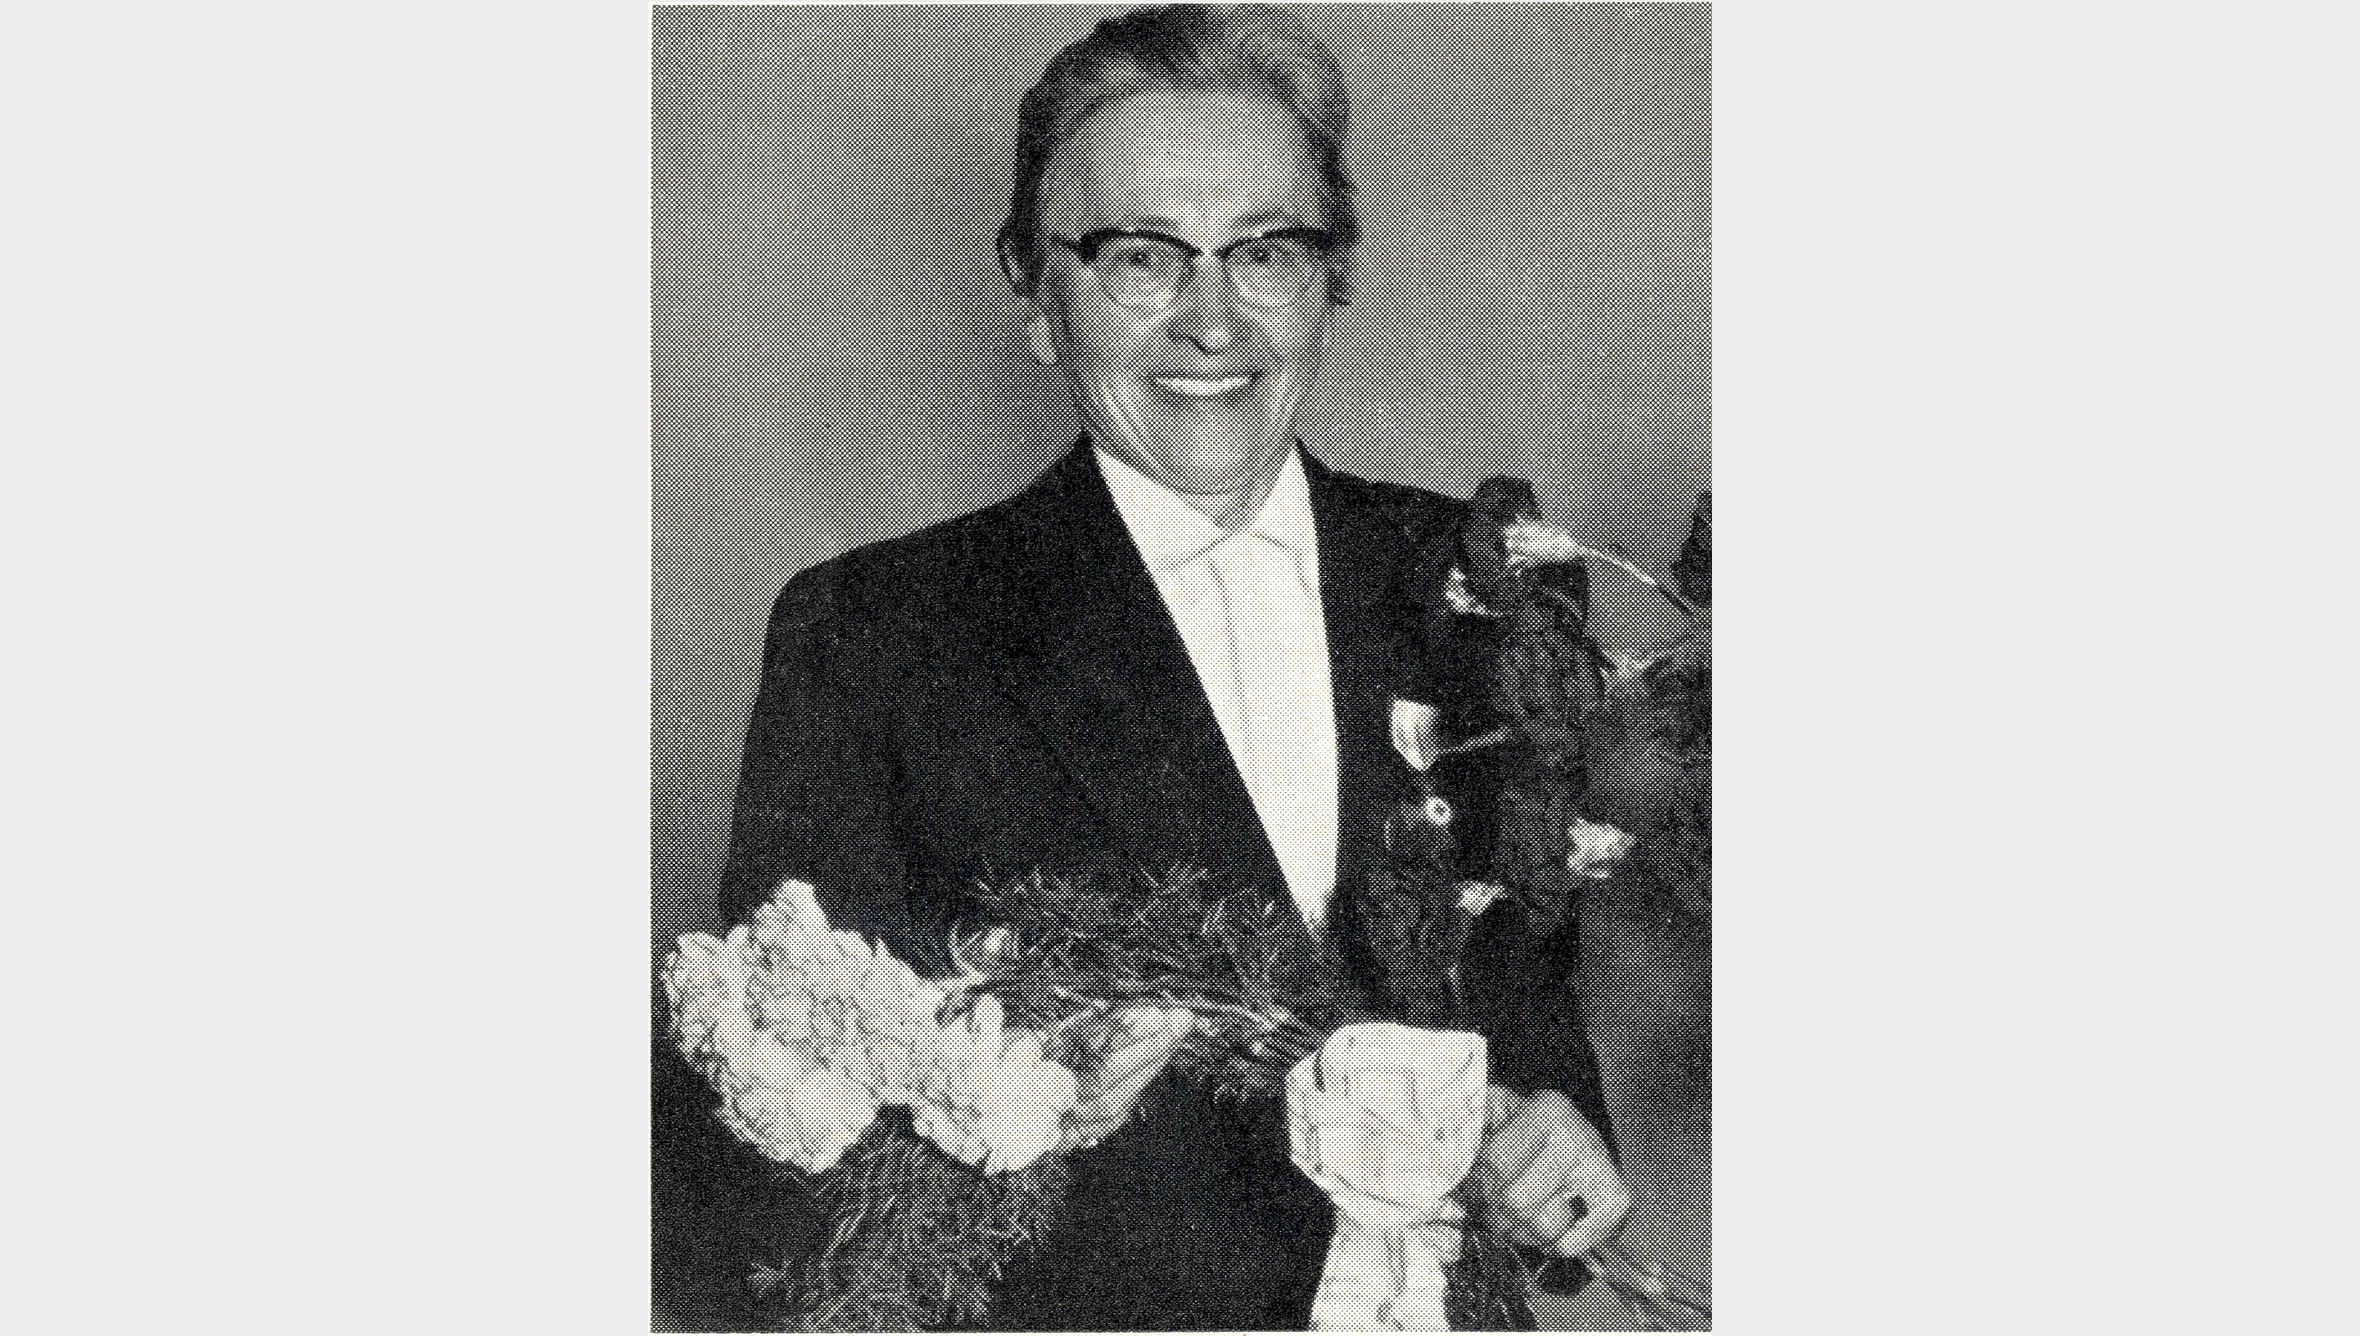 Mit der Arbeitnehmervertreterin Therese Seitz zog 1957 erstmals eine Frau in den Aufsichtsrat der Bayerischen Vereinsbank ein. 1969 beschäftigte die Bank rund 4.300 Mitarbeiter, die Hälfte davon Frauen. 1948 lag der Anteil noch bei einem Drittel.